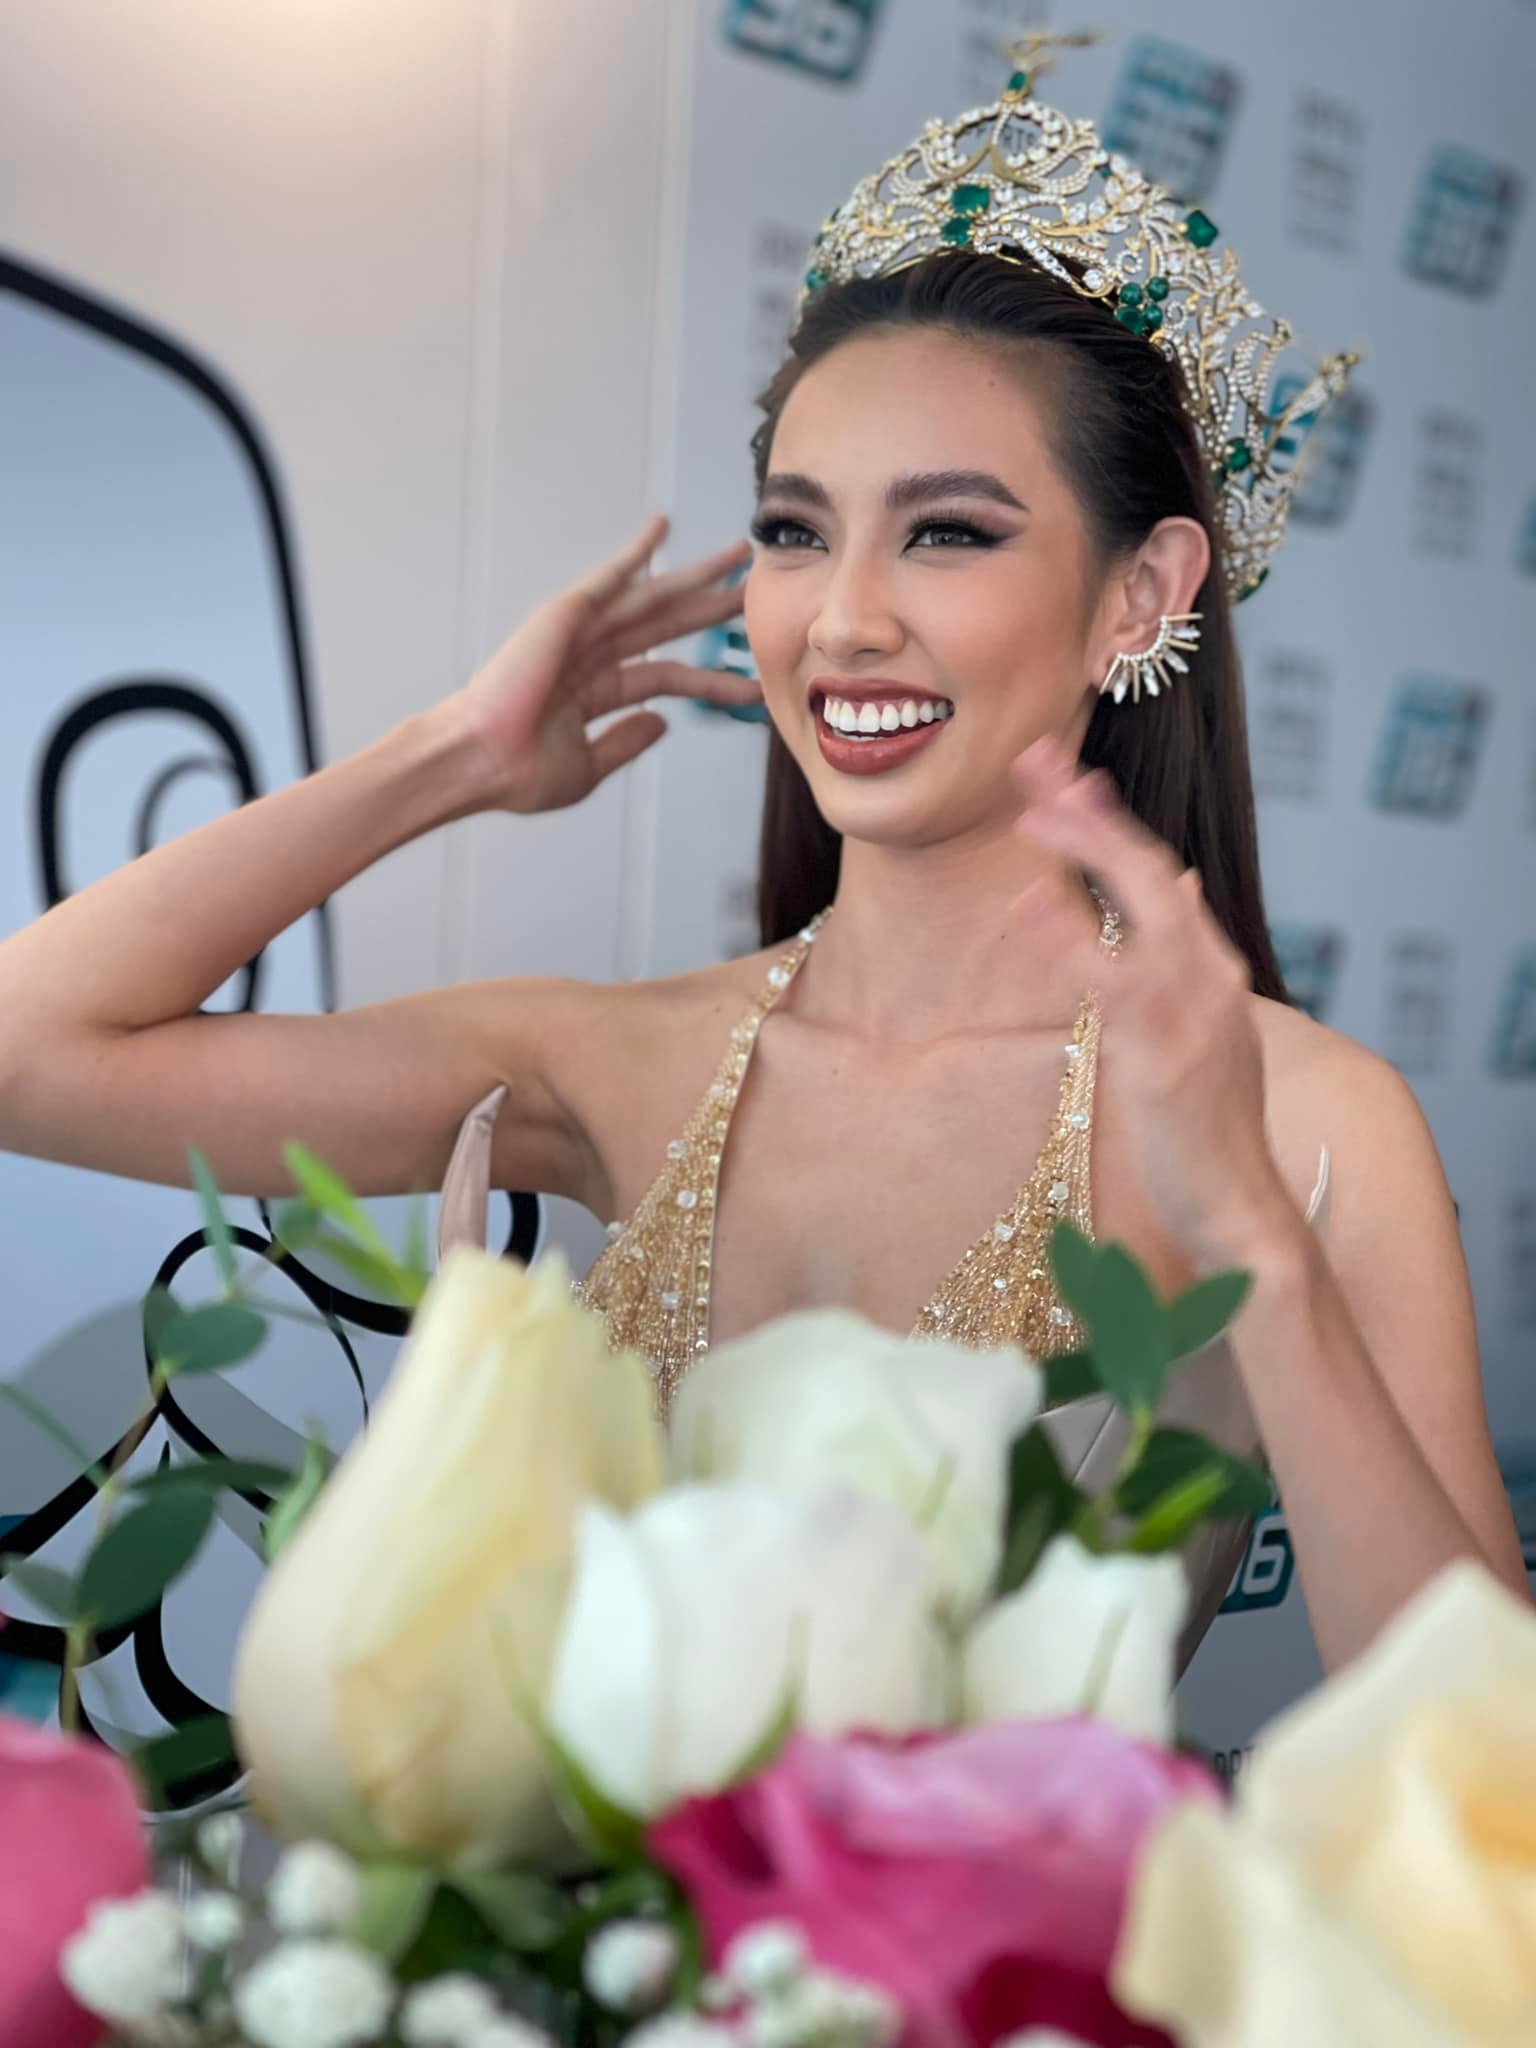 Hoa hậu Thùy Tiên bị fan chụp lén nhưng vẫn vô cùng tươi tắn, rạng rỡ. Cô bày tỏ: 'Trên cương vị mới nhưng vẫn là những biểu cảm quen thuộc nha'.